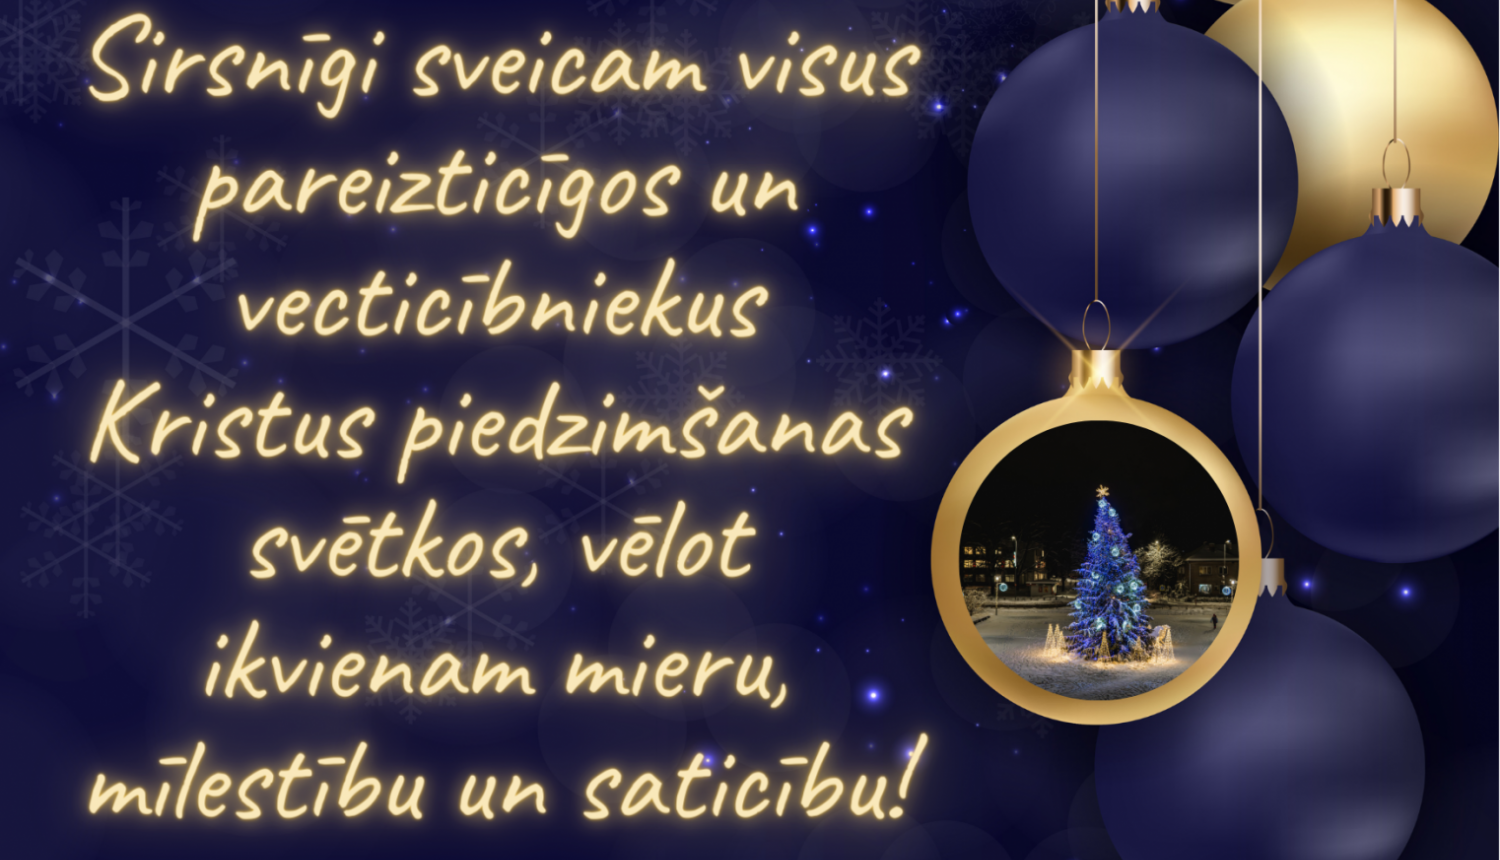 Sirsnīgi sveicam pareizticīgos un vecticībniekus Kristus piedzimšanas svētkos